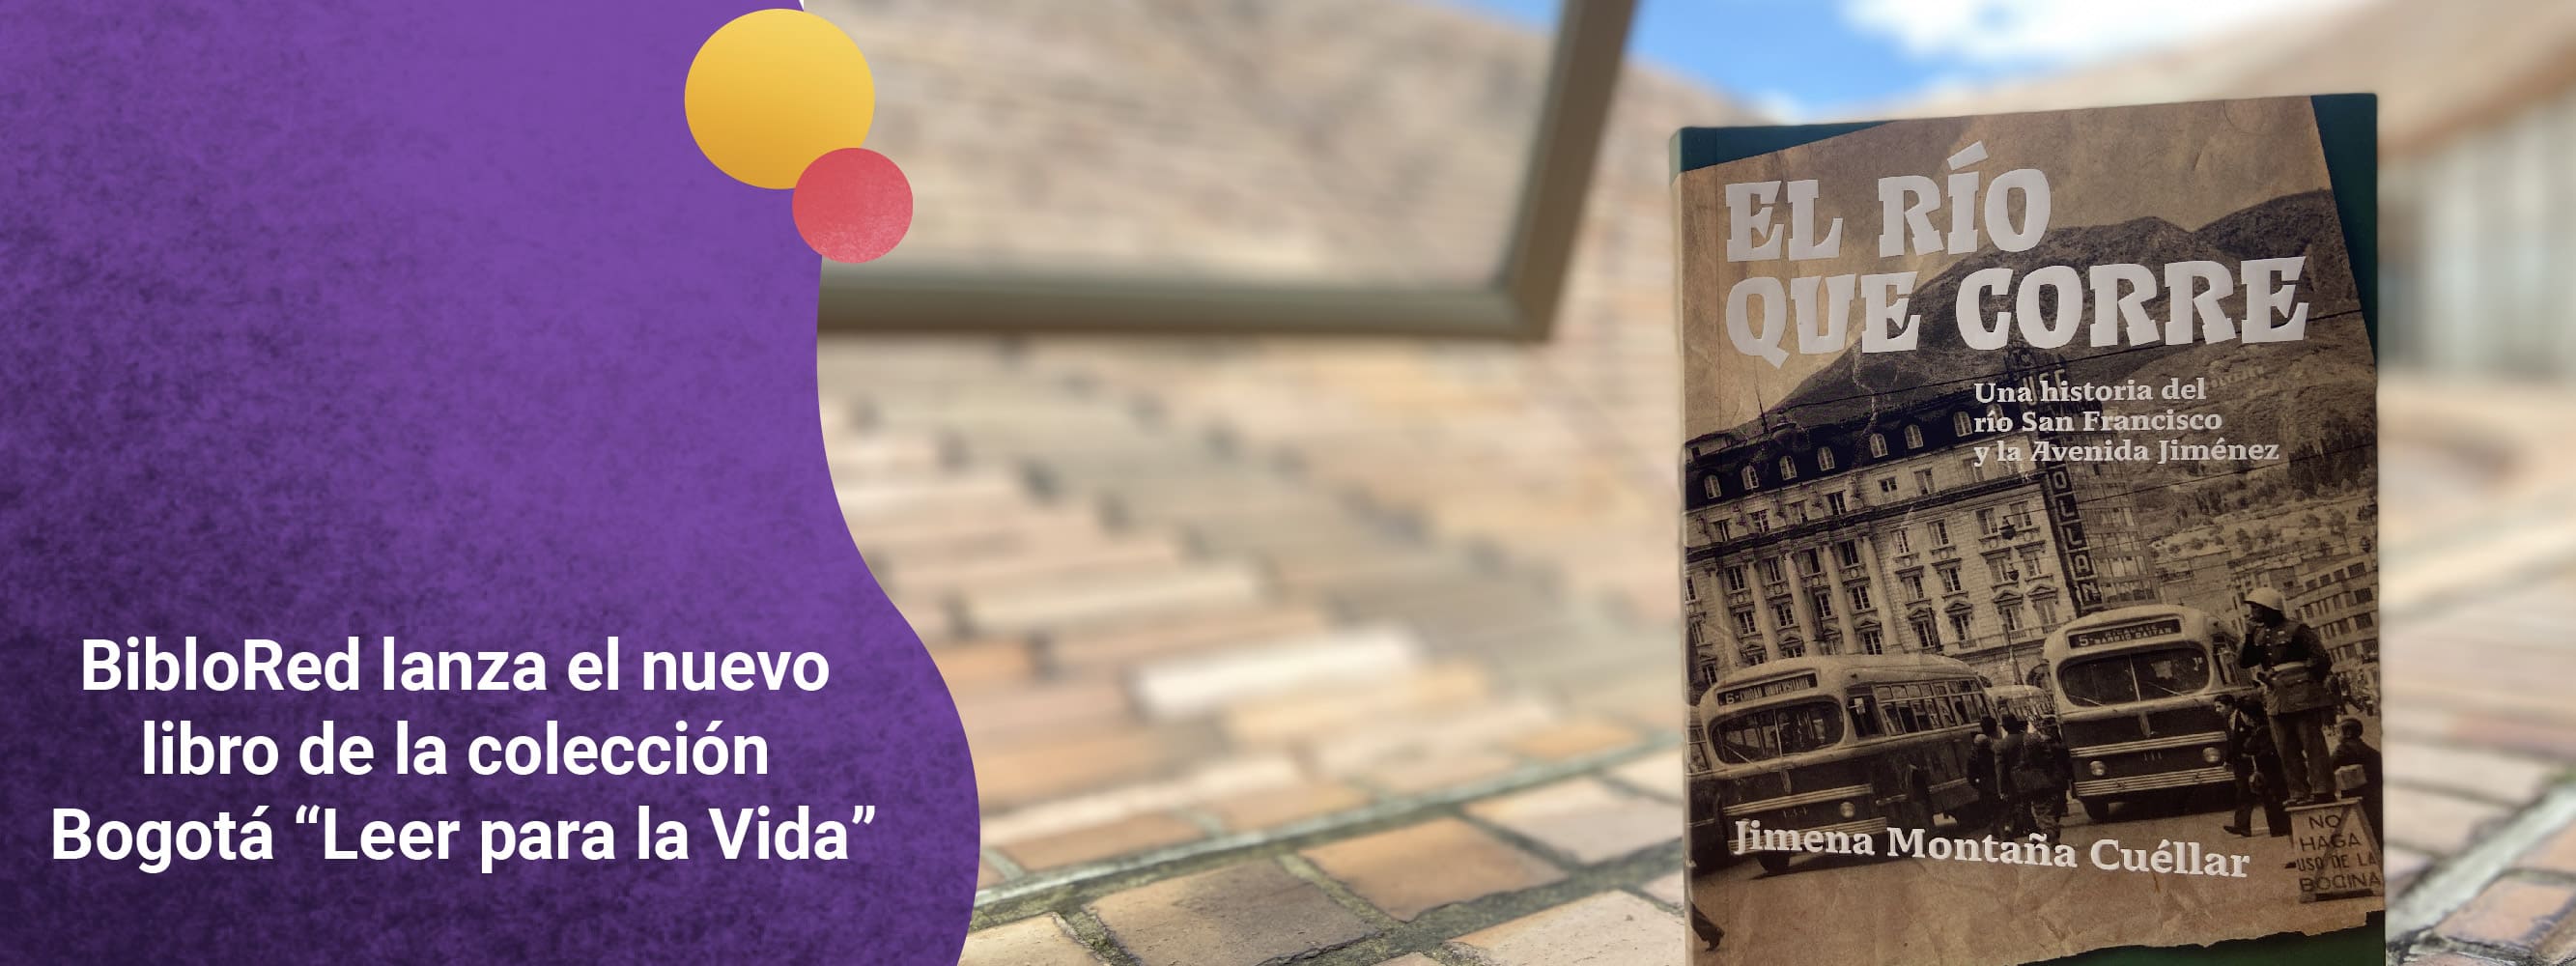 BibloRed lanza el nuevo libro de la colección Bogotá “Leer para la Vida”